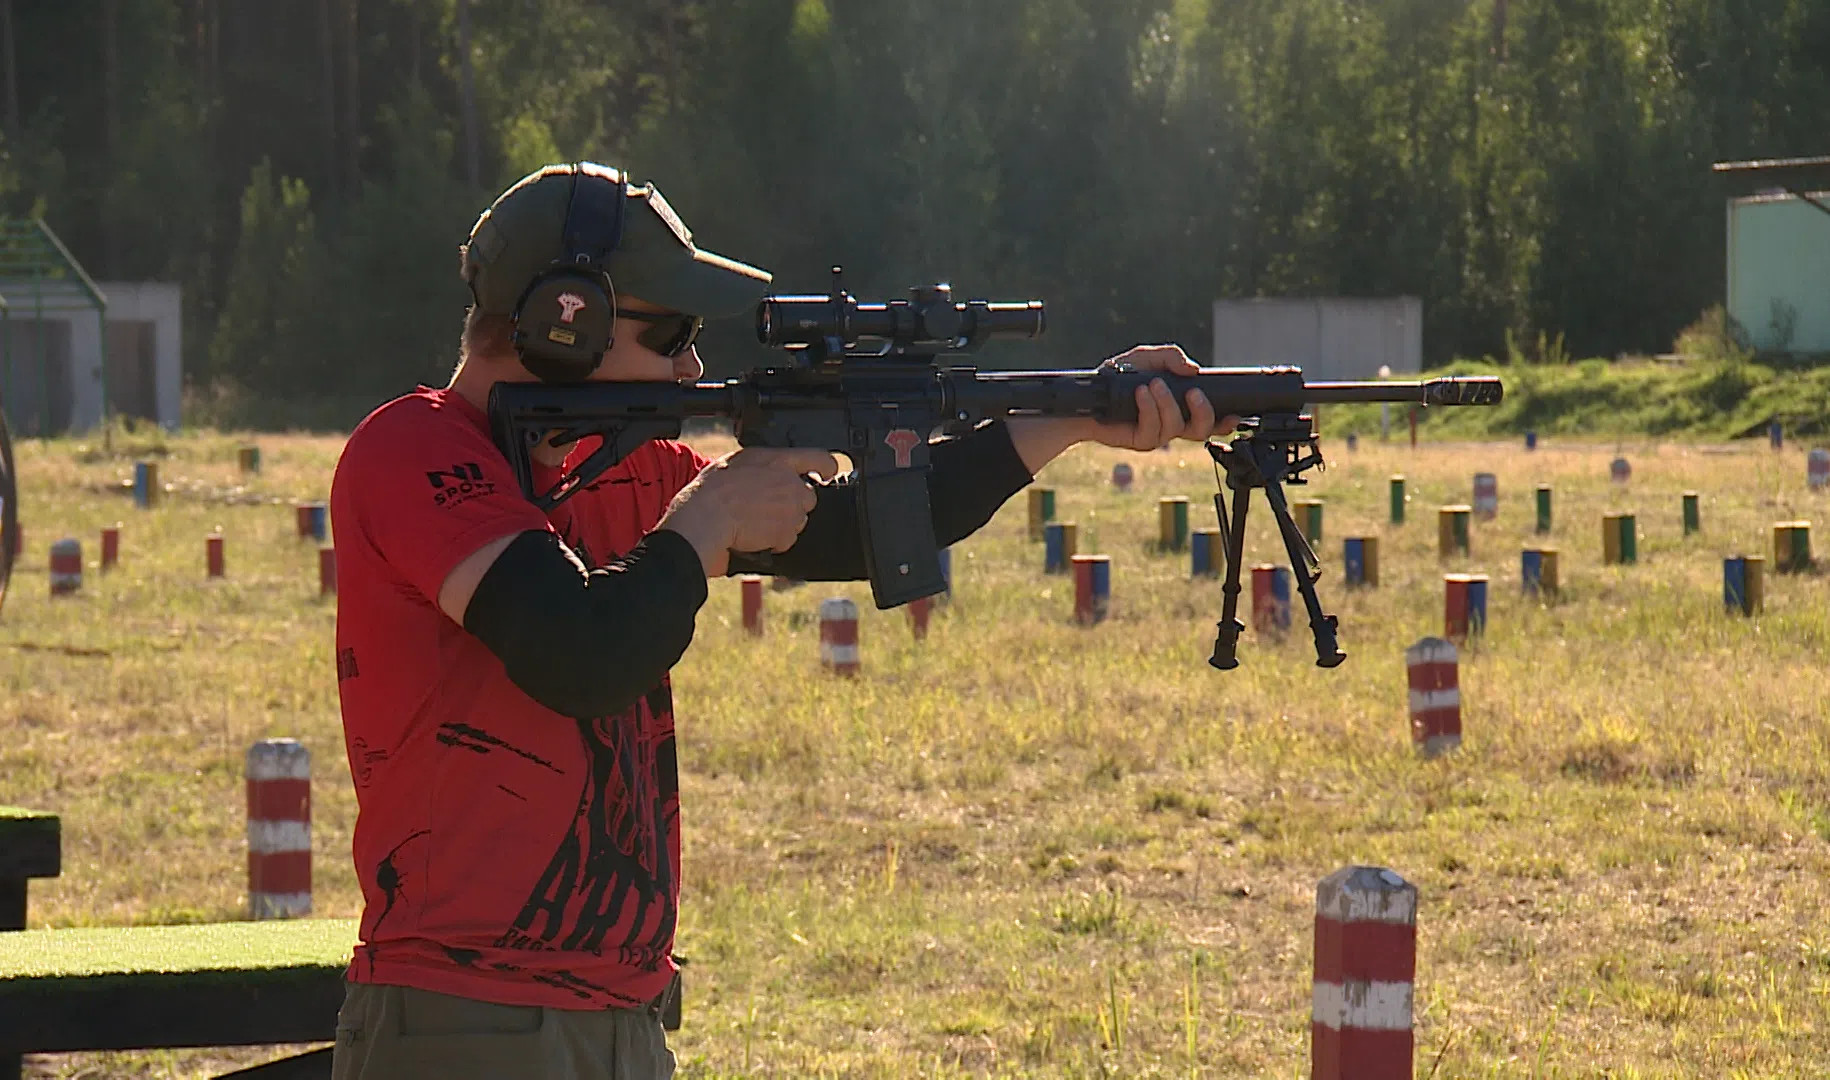 Борьба с последствиями «апокалипсиса» ждет стрелков соревнований Zombie Hunting в Петербурге